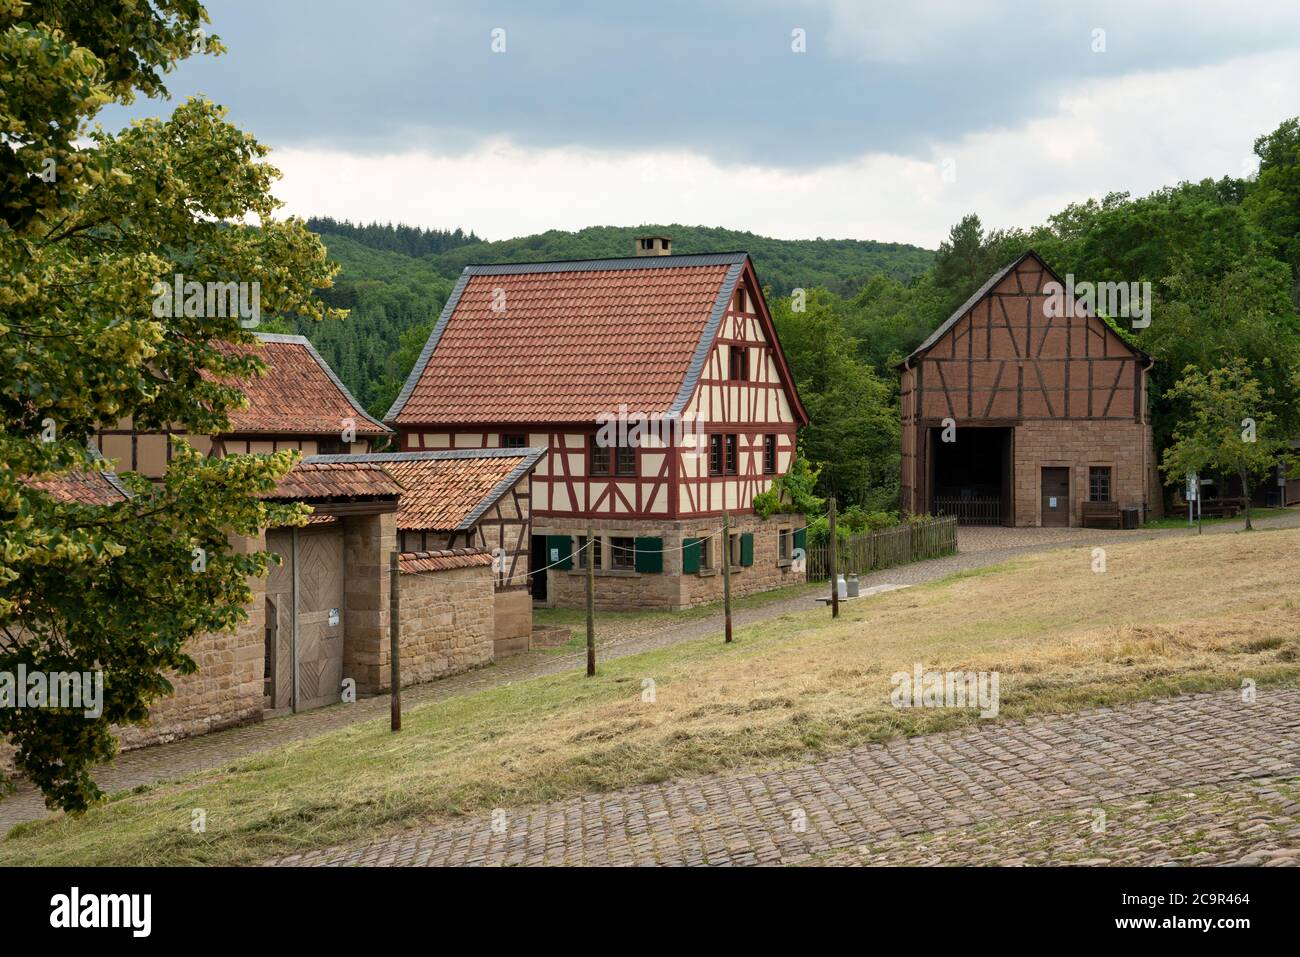 BAD SOBERNHEIM, ALLEMAGNE - 26 JUIN 2020 : image panoramique des vieilles maisons en demi-bois, musée en plein air du village à Bad Sobernheim le 26 juin 2020 à Germa Banque D'Images